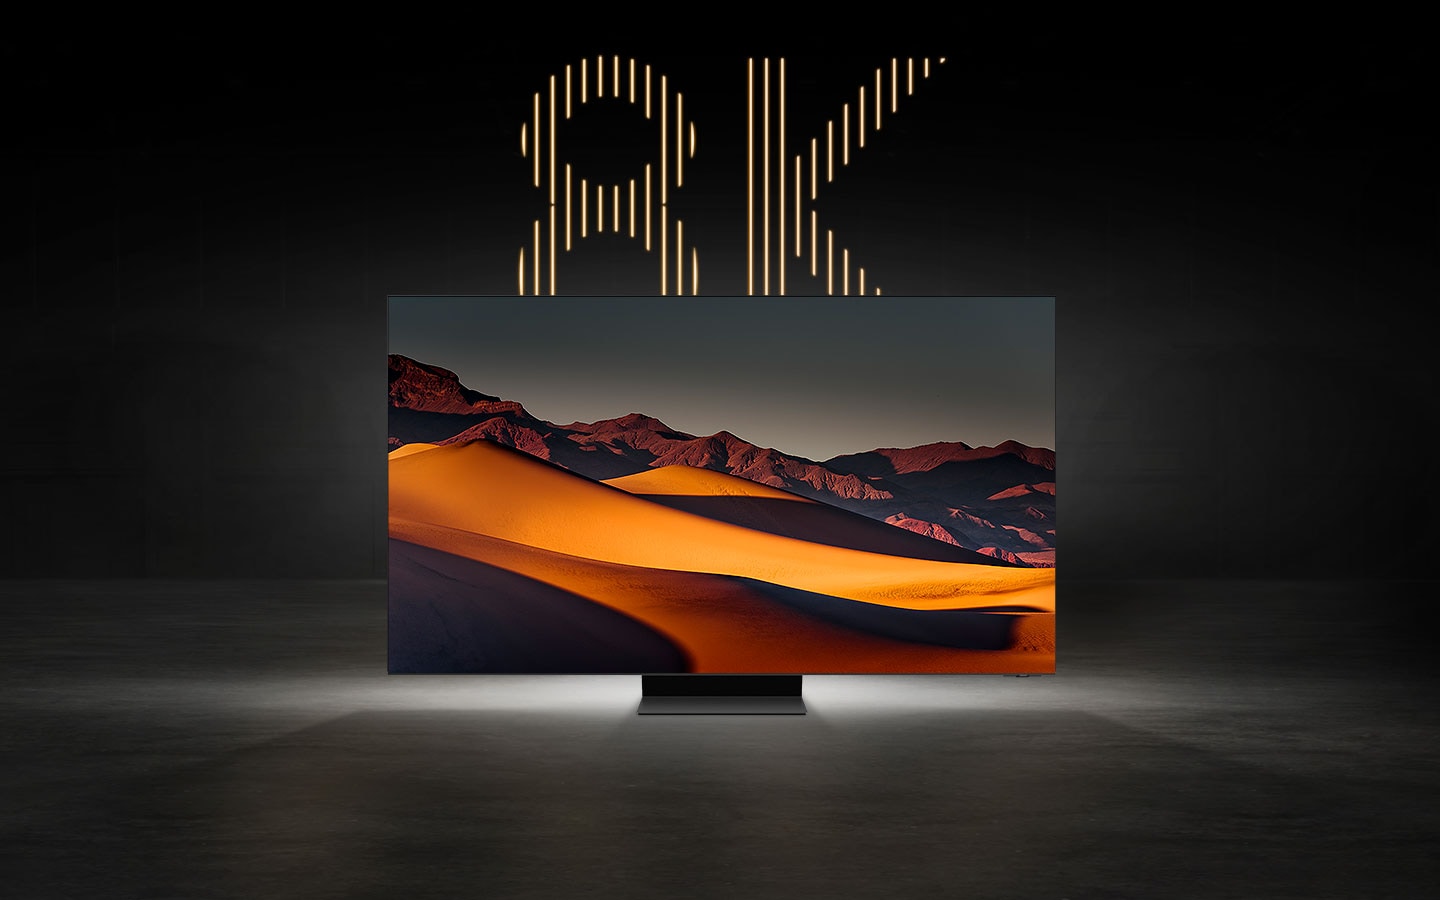 Un TV 8K mostra l’immagine mozzafiato di un deserto montuoso, con la scritta “8K” ben visibile dietro lo schermo.